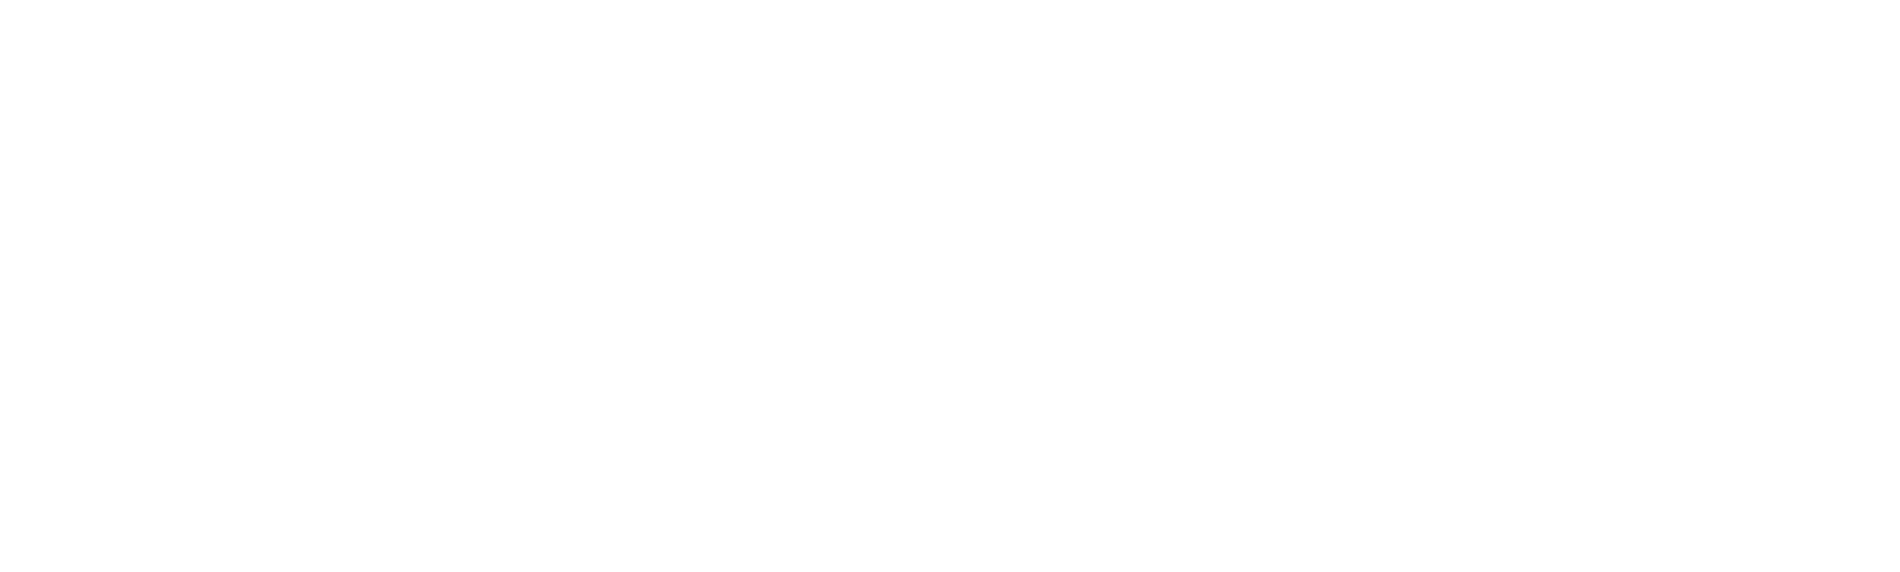 Carter Funeral Home Logo